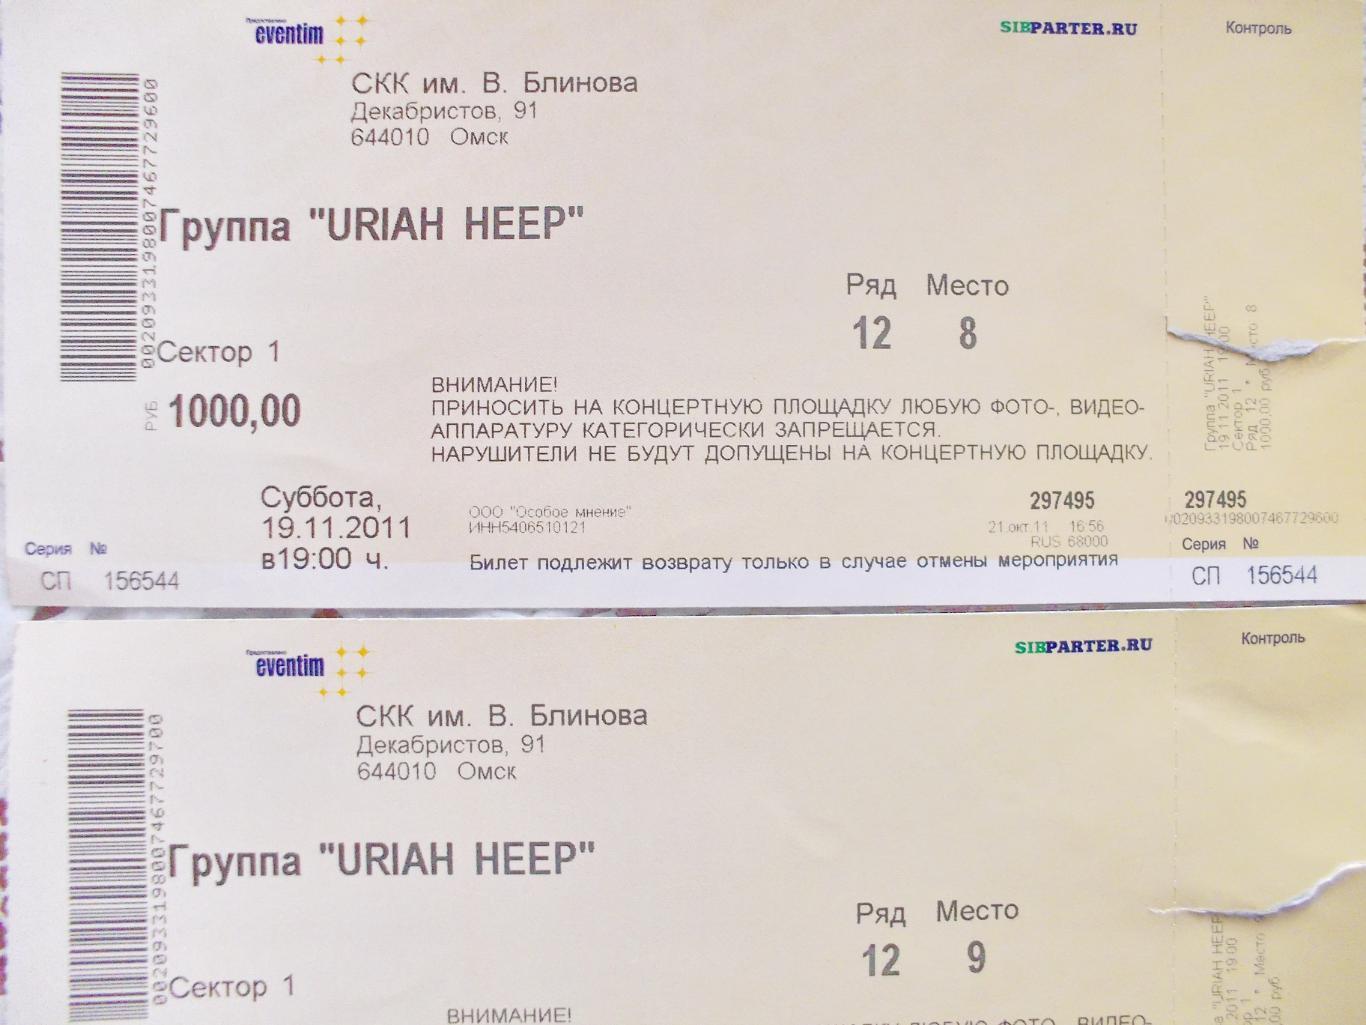 Два билета на концерт URIAH HEEP. Омск, 2011, СКК им. Блинова.